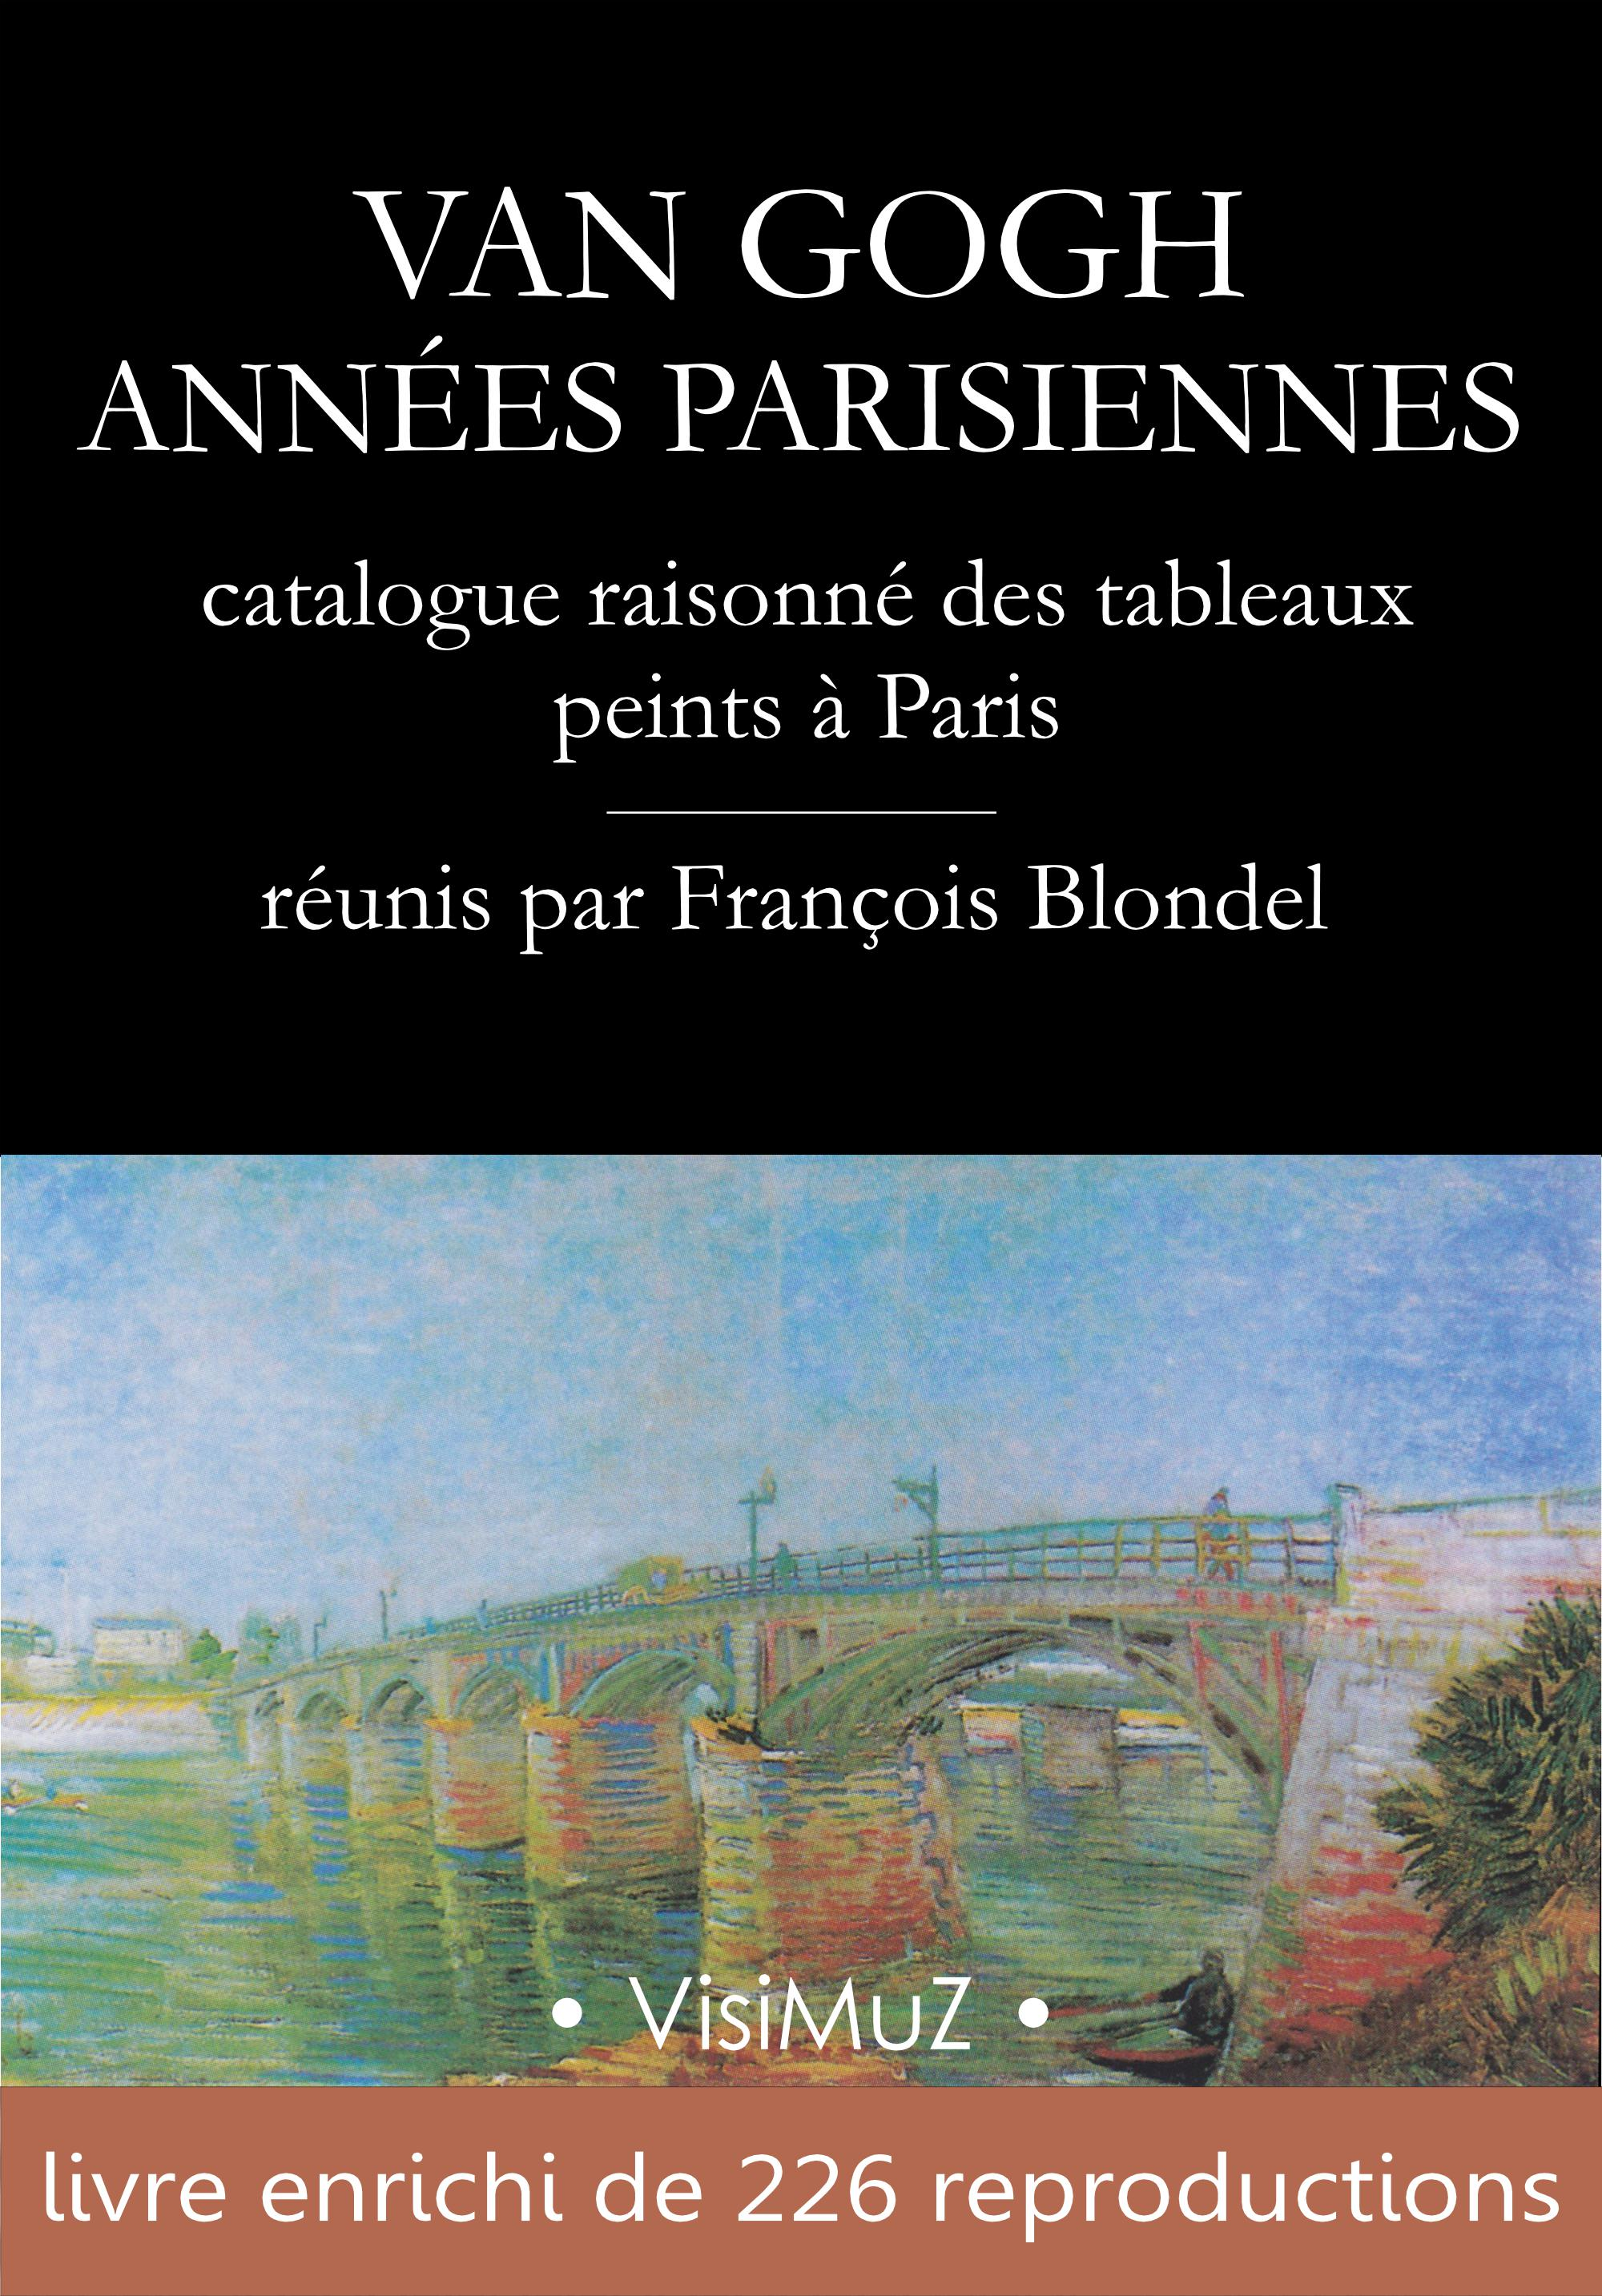 Ebook Van Gogh Années parisiennes catalogue raisonné des tableaux